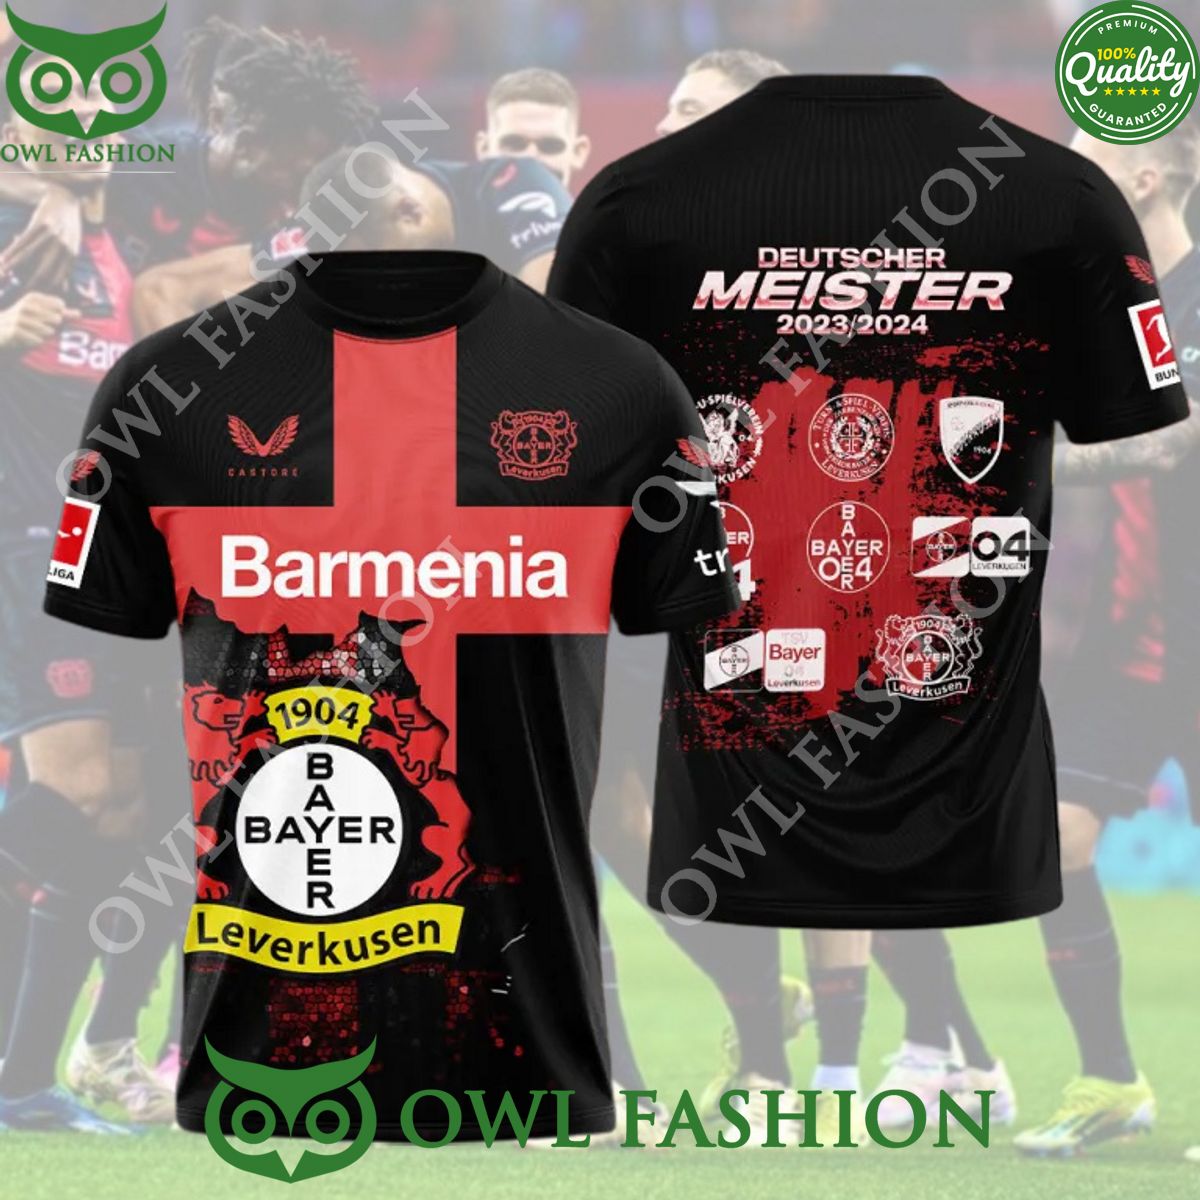 Barmenia Deutscher Meister 2023 2024 Bayer Leverkusen AOP t shirt